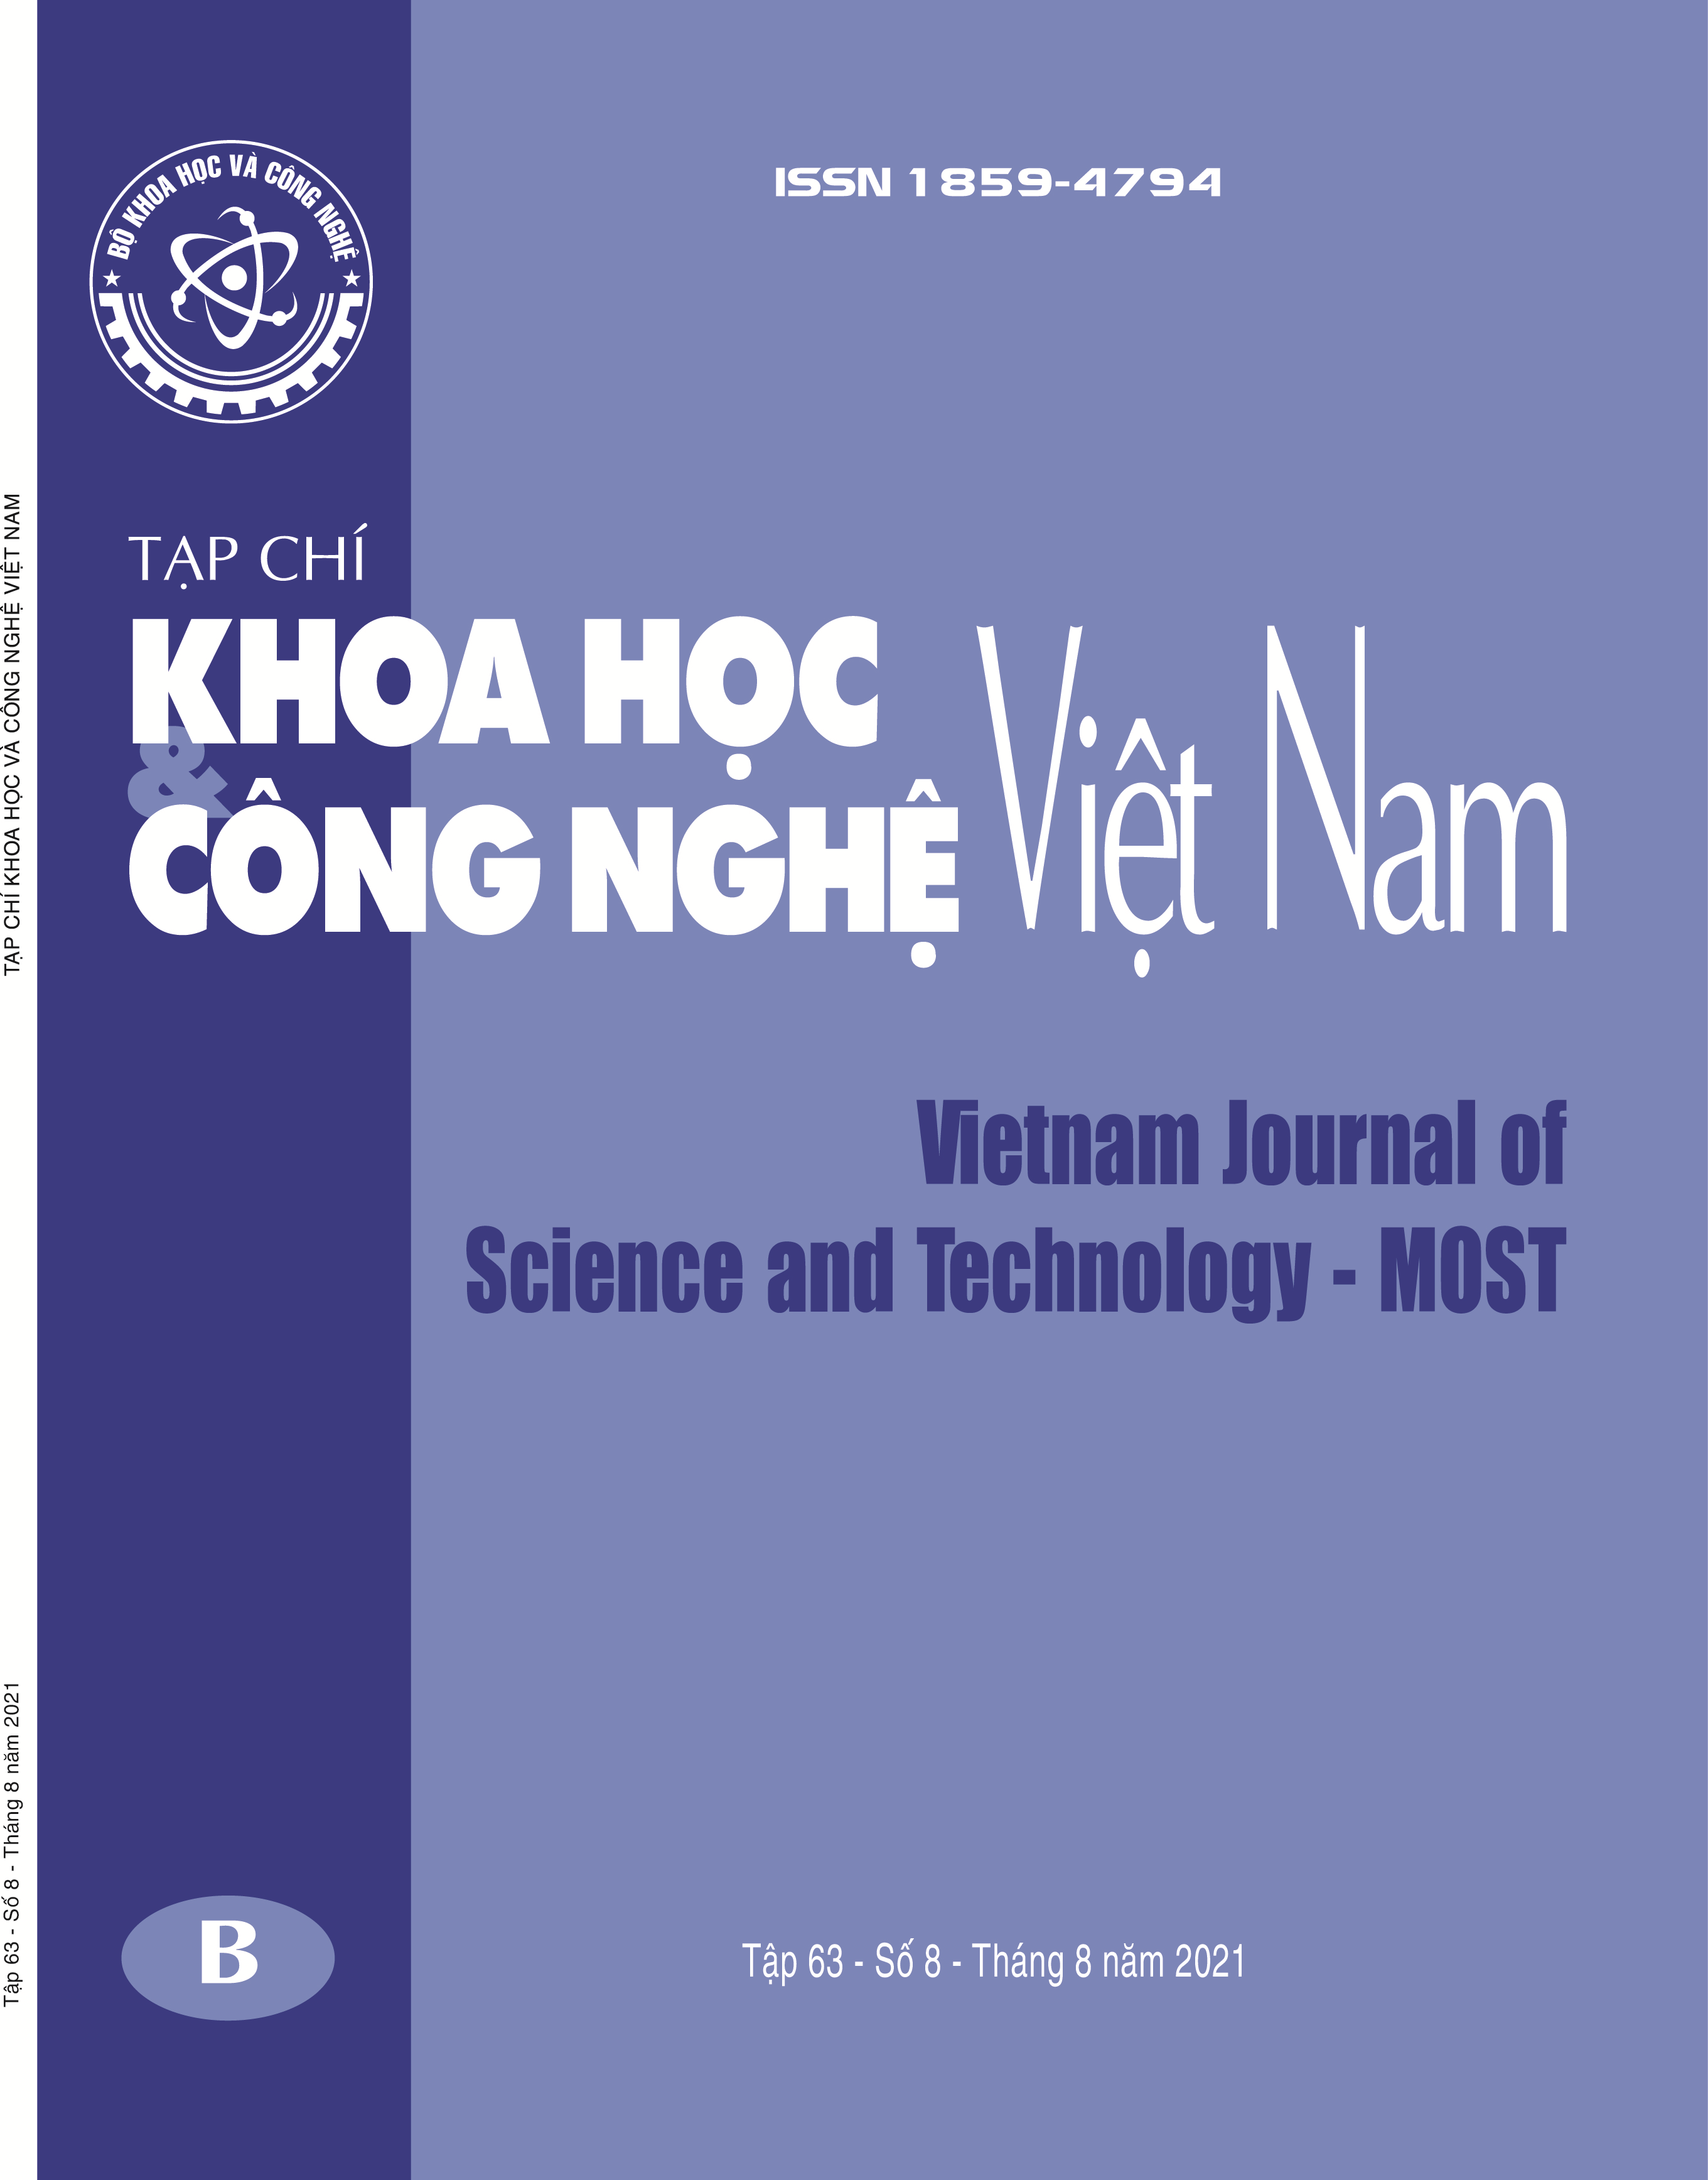 Trang bìa của Tạp chí Khoa học và công nghệ 